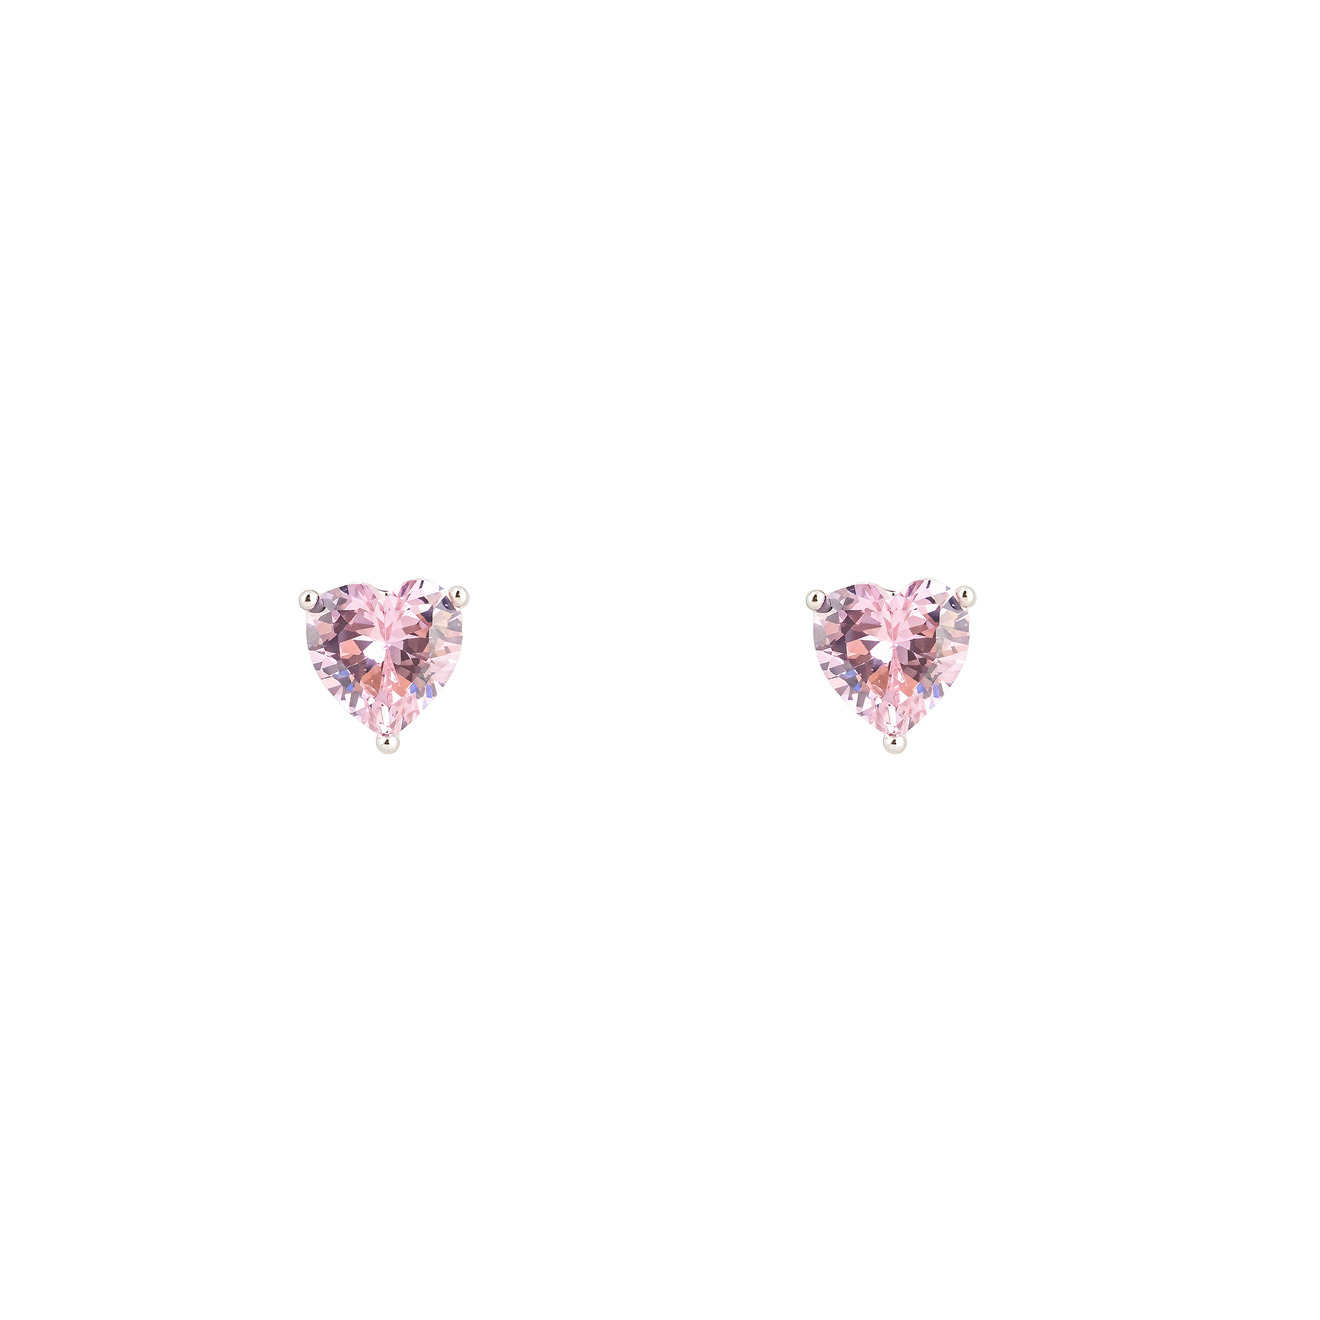 herald percy серебристые серьги сердца с багетами кристаллов Herald Percy Серебристые серьги в форме розового сердца